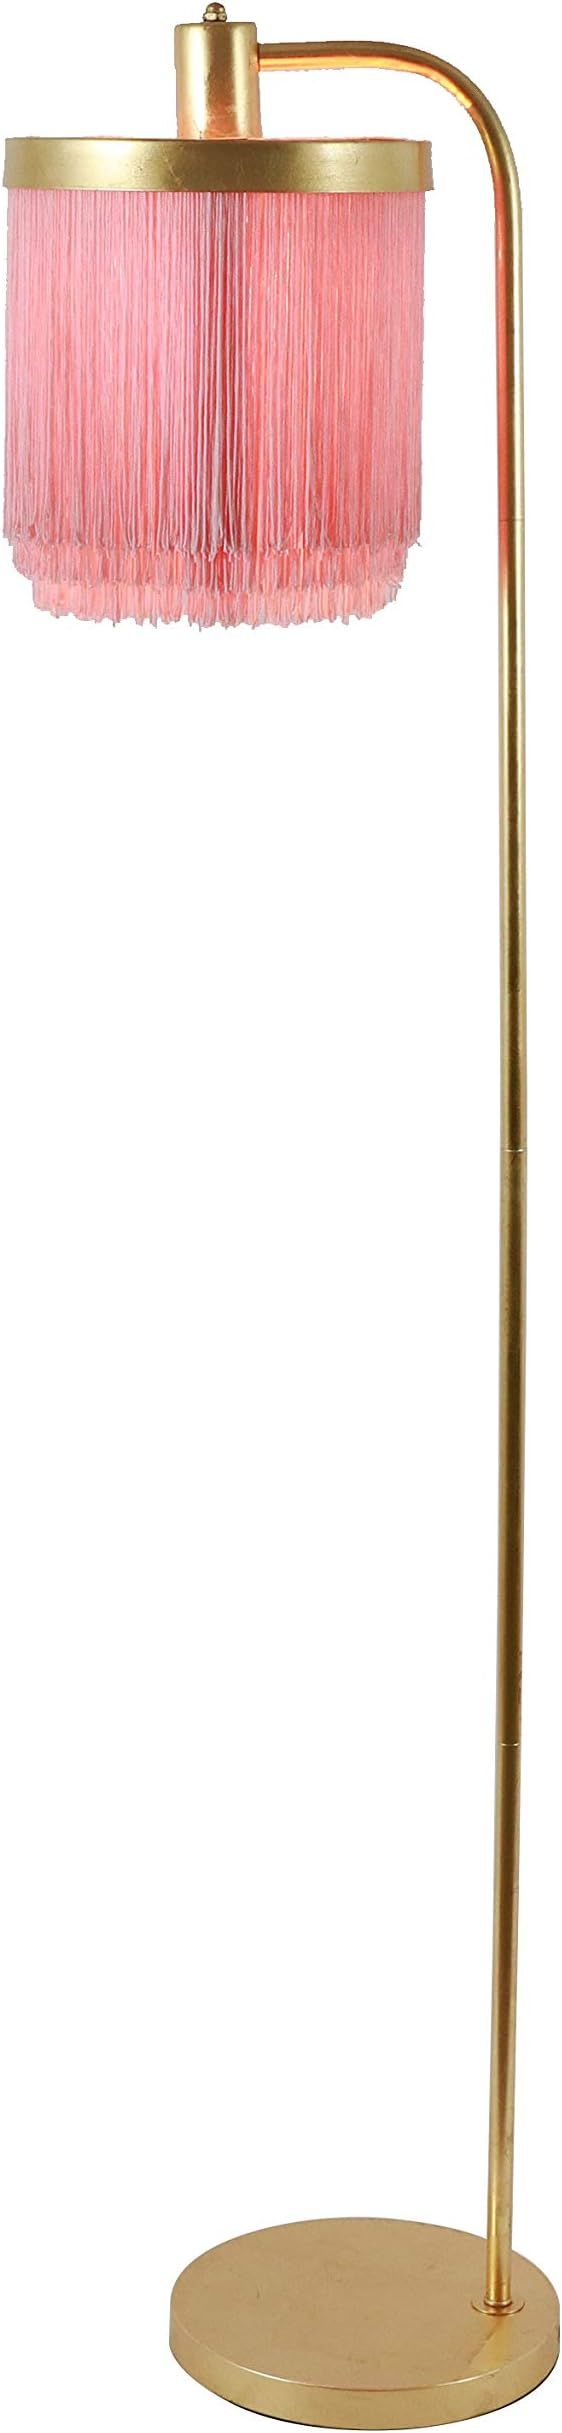 Decor Therapy Framboise Fringe Shade Floor Lamp, Gold Leaf | Amazon (US)